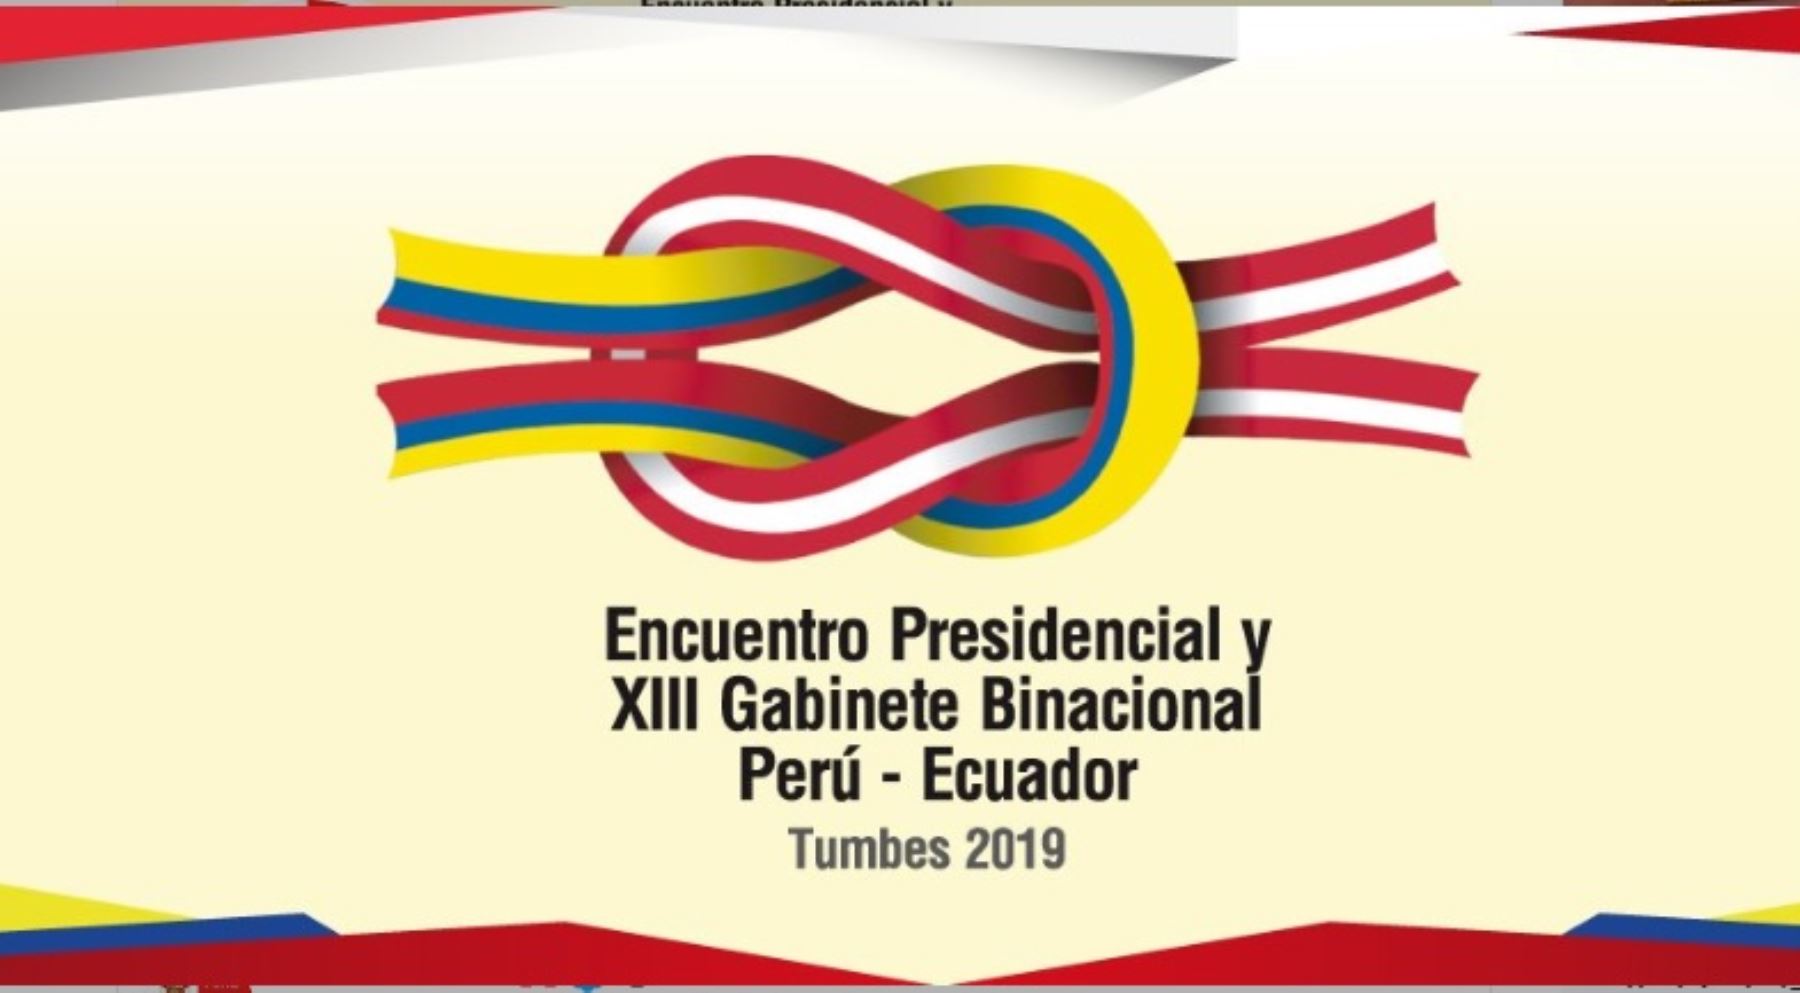 Encuentro presidencial y XIII Gabinete Binacional  Perú Ecuador 2019.